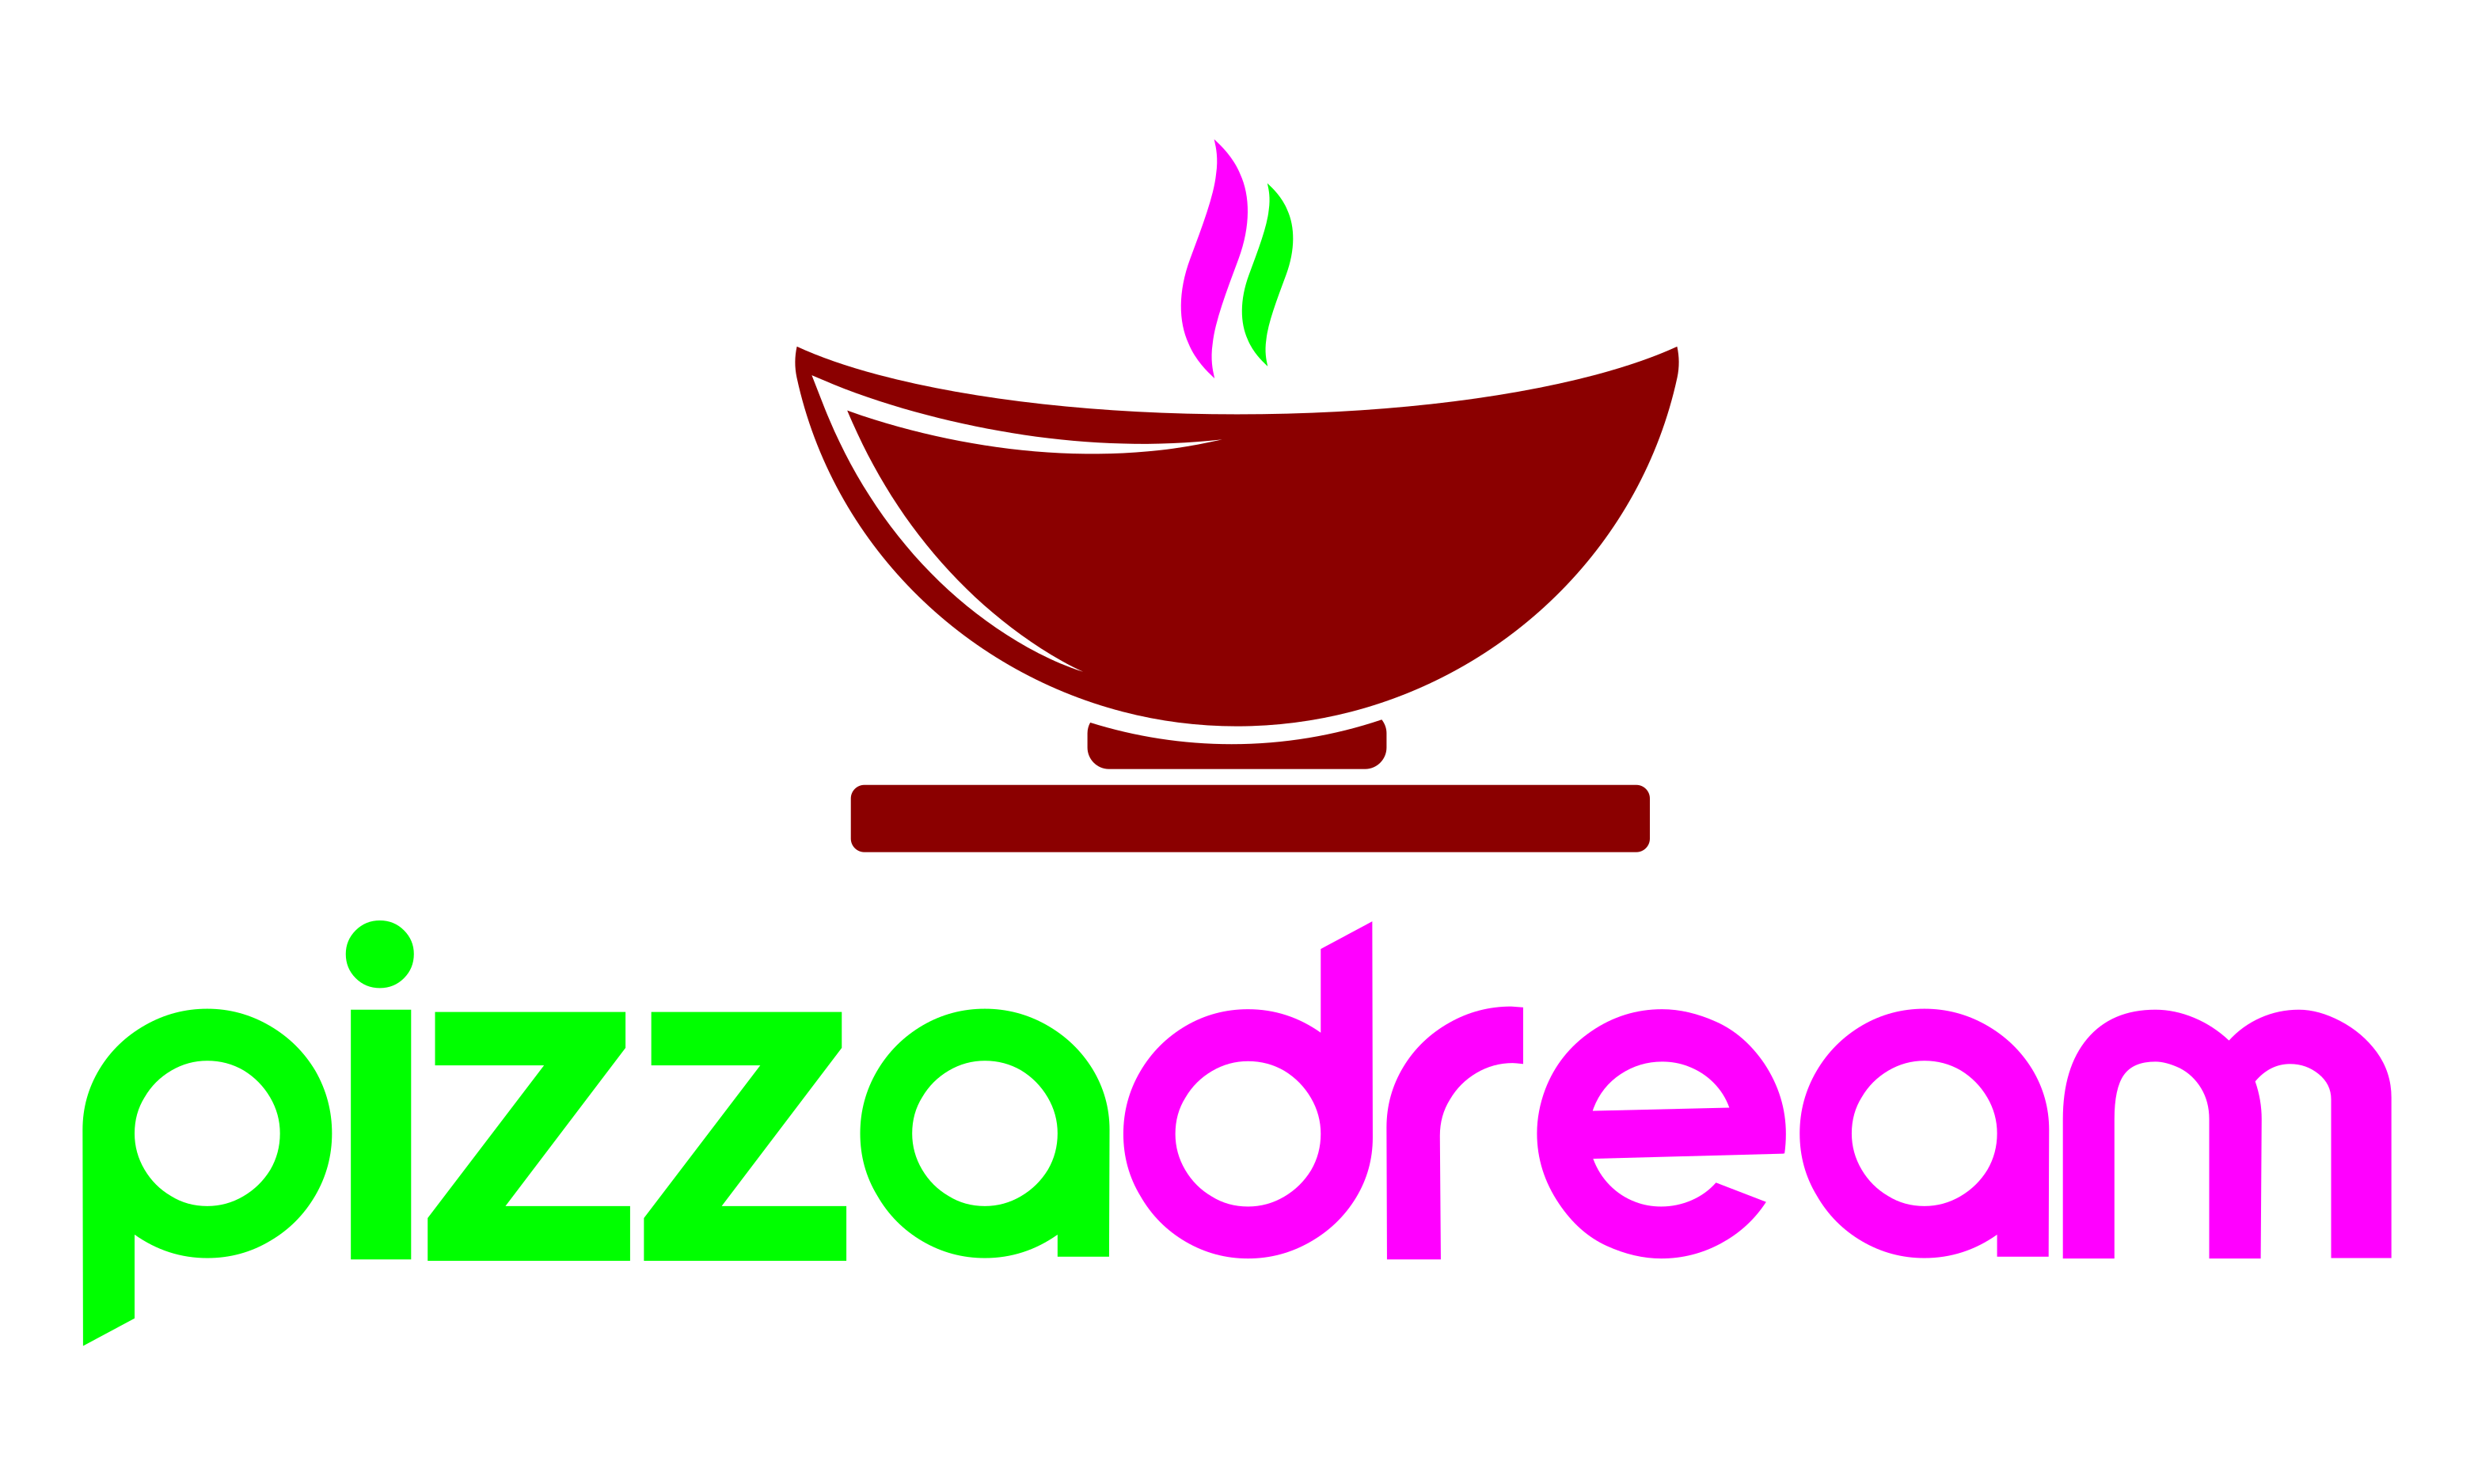 Pizza Dream Logo